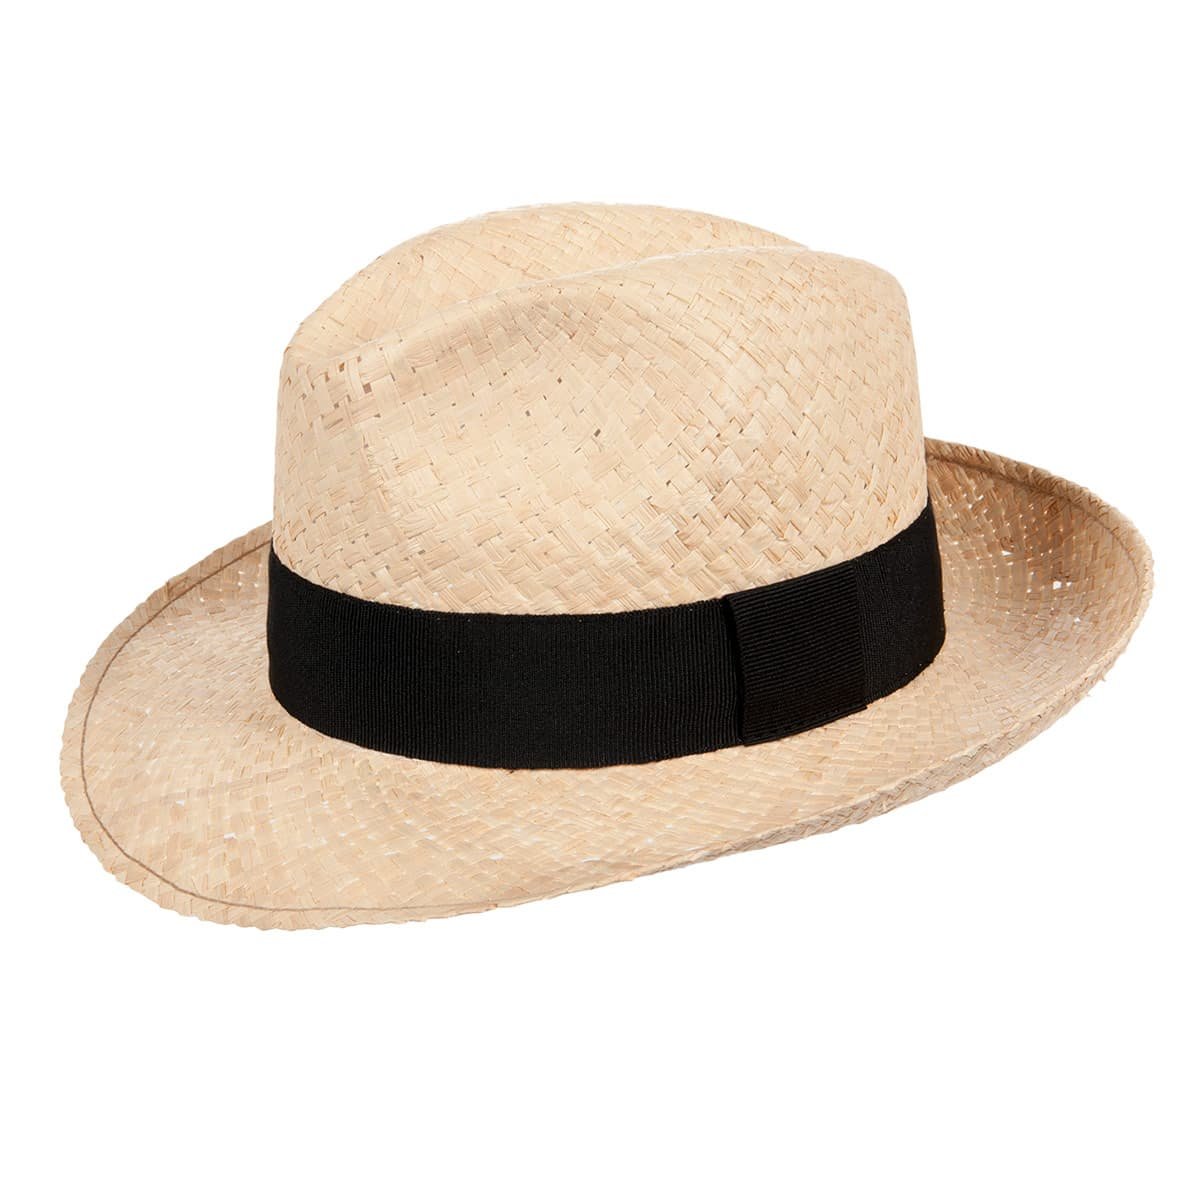 Panama Mütze Krempenhut Strohhut Strand Hut Bogarthut Hüte Sommer Herren Damen 